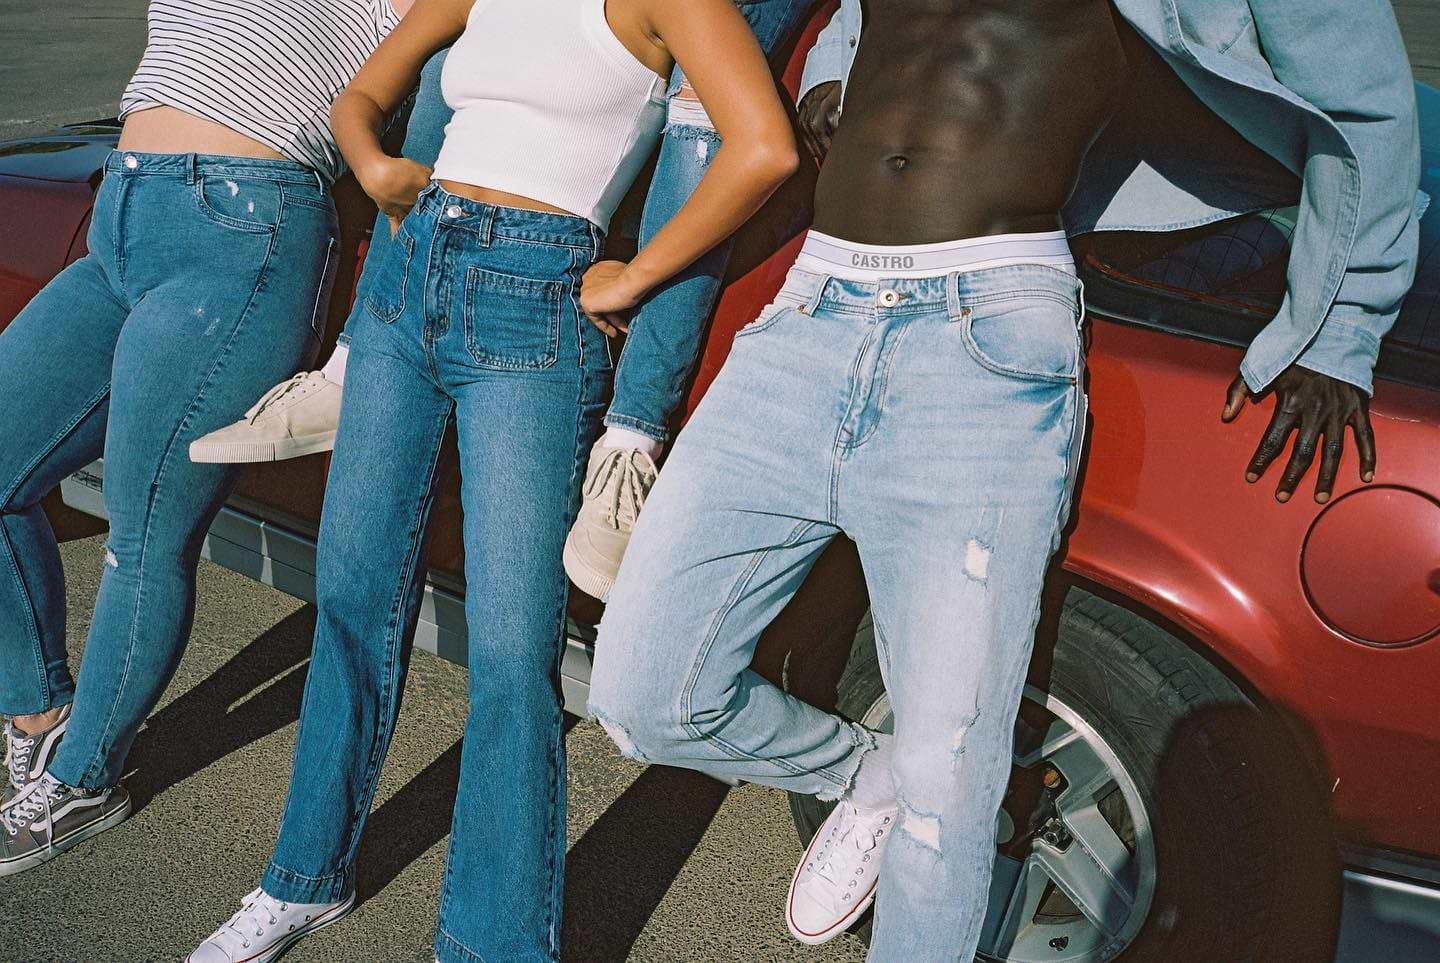 The New Denim Collection👖 קולקציית הג׳ינסים החדשה מחכה עכשיו בחנויות ובאתר עם 40% הנחה על הזוג השני. #CastroFashion #JustJeans* בכפוף לתקנון | לפריטים המשתתפים במבצע | ללא כפל הטבות.